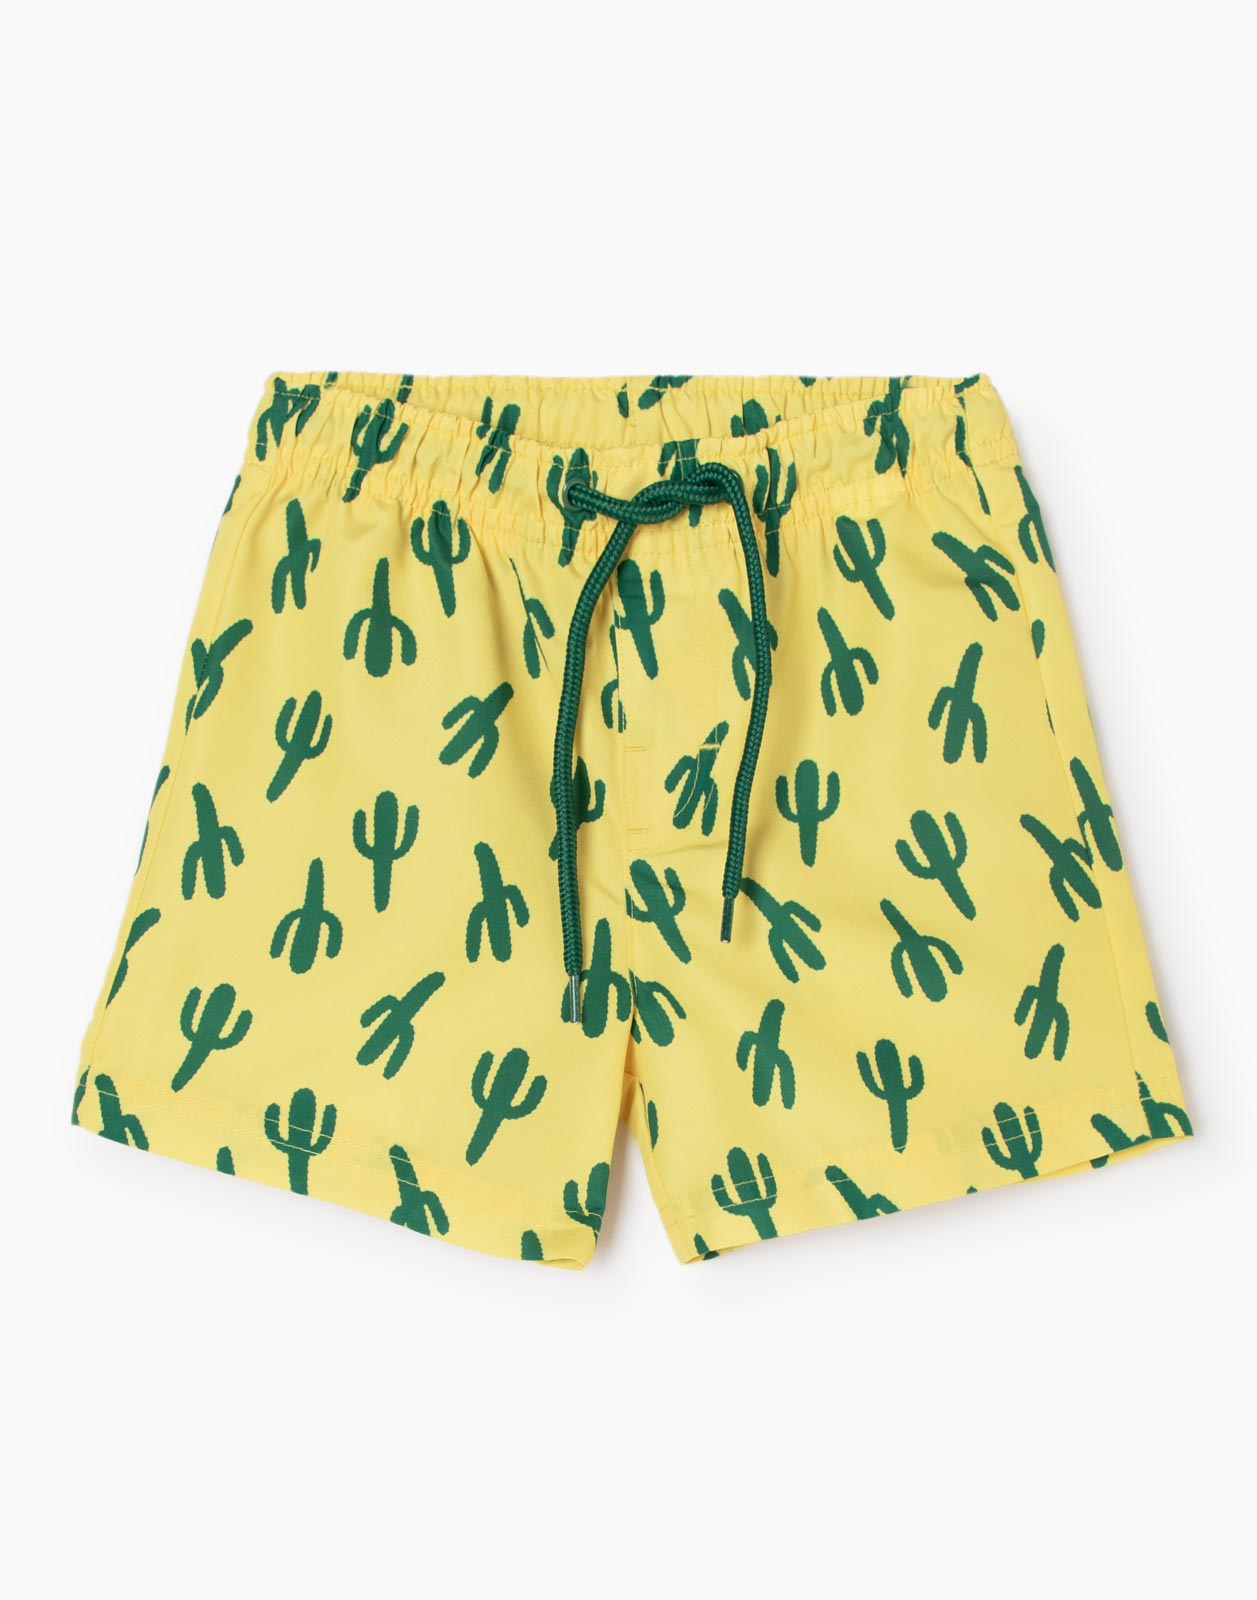 Жёлтые пляжные шорты с кактусами для мальчика р.128